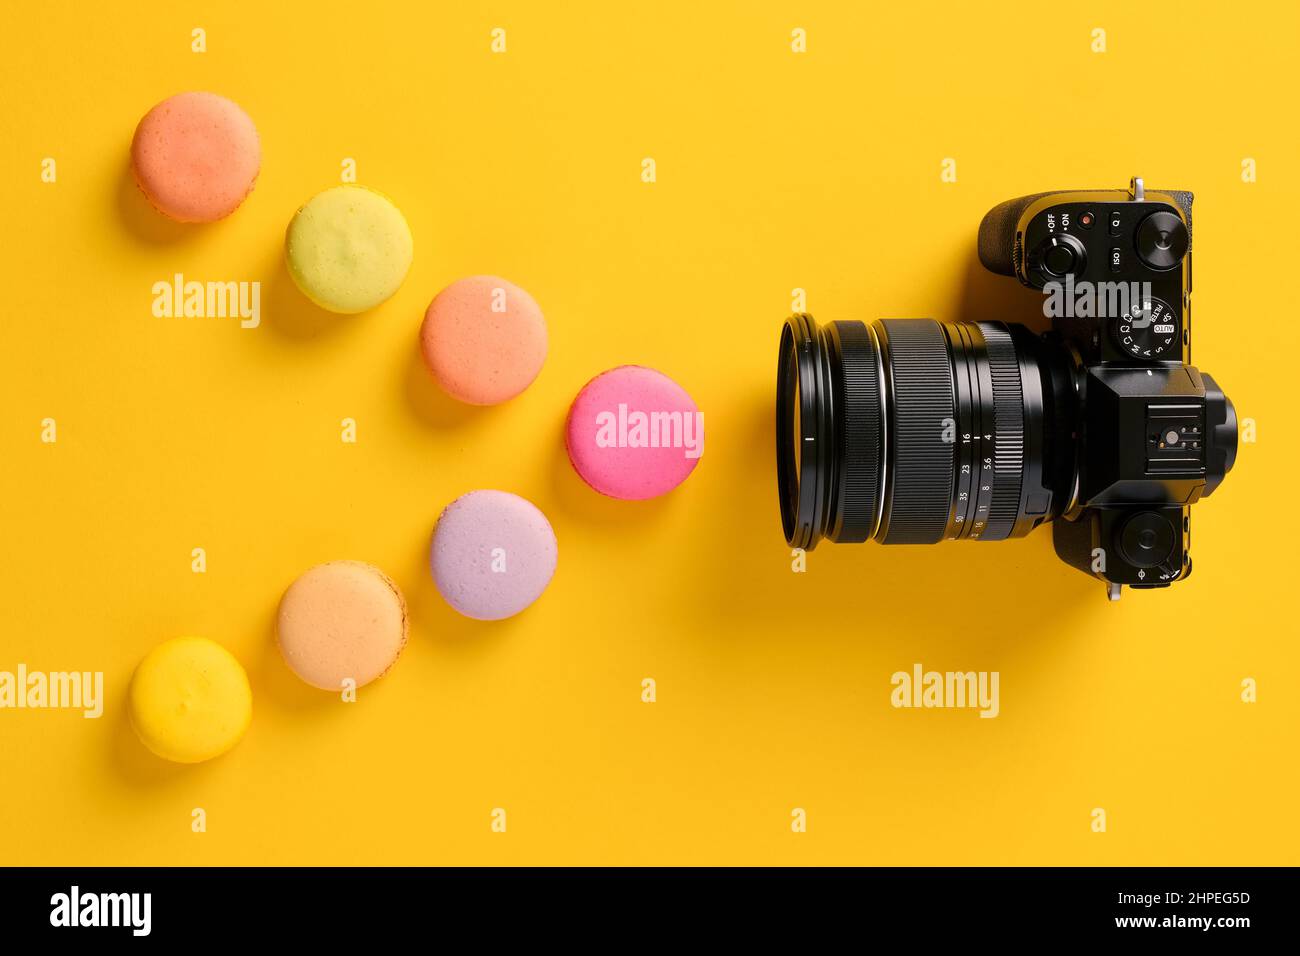 Spettro luminoso, teoria dei colori e concetto fotografico. Macaron colorati progettati come onde luminose con una fotocamera. Foto Stock